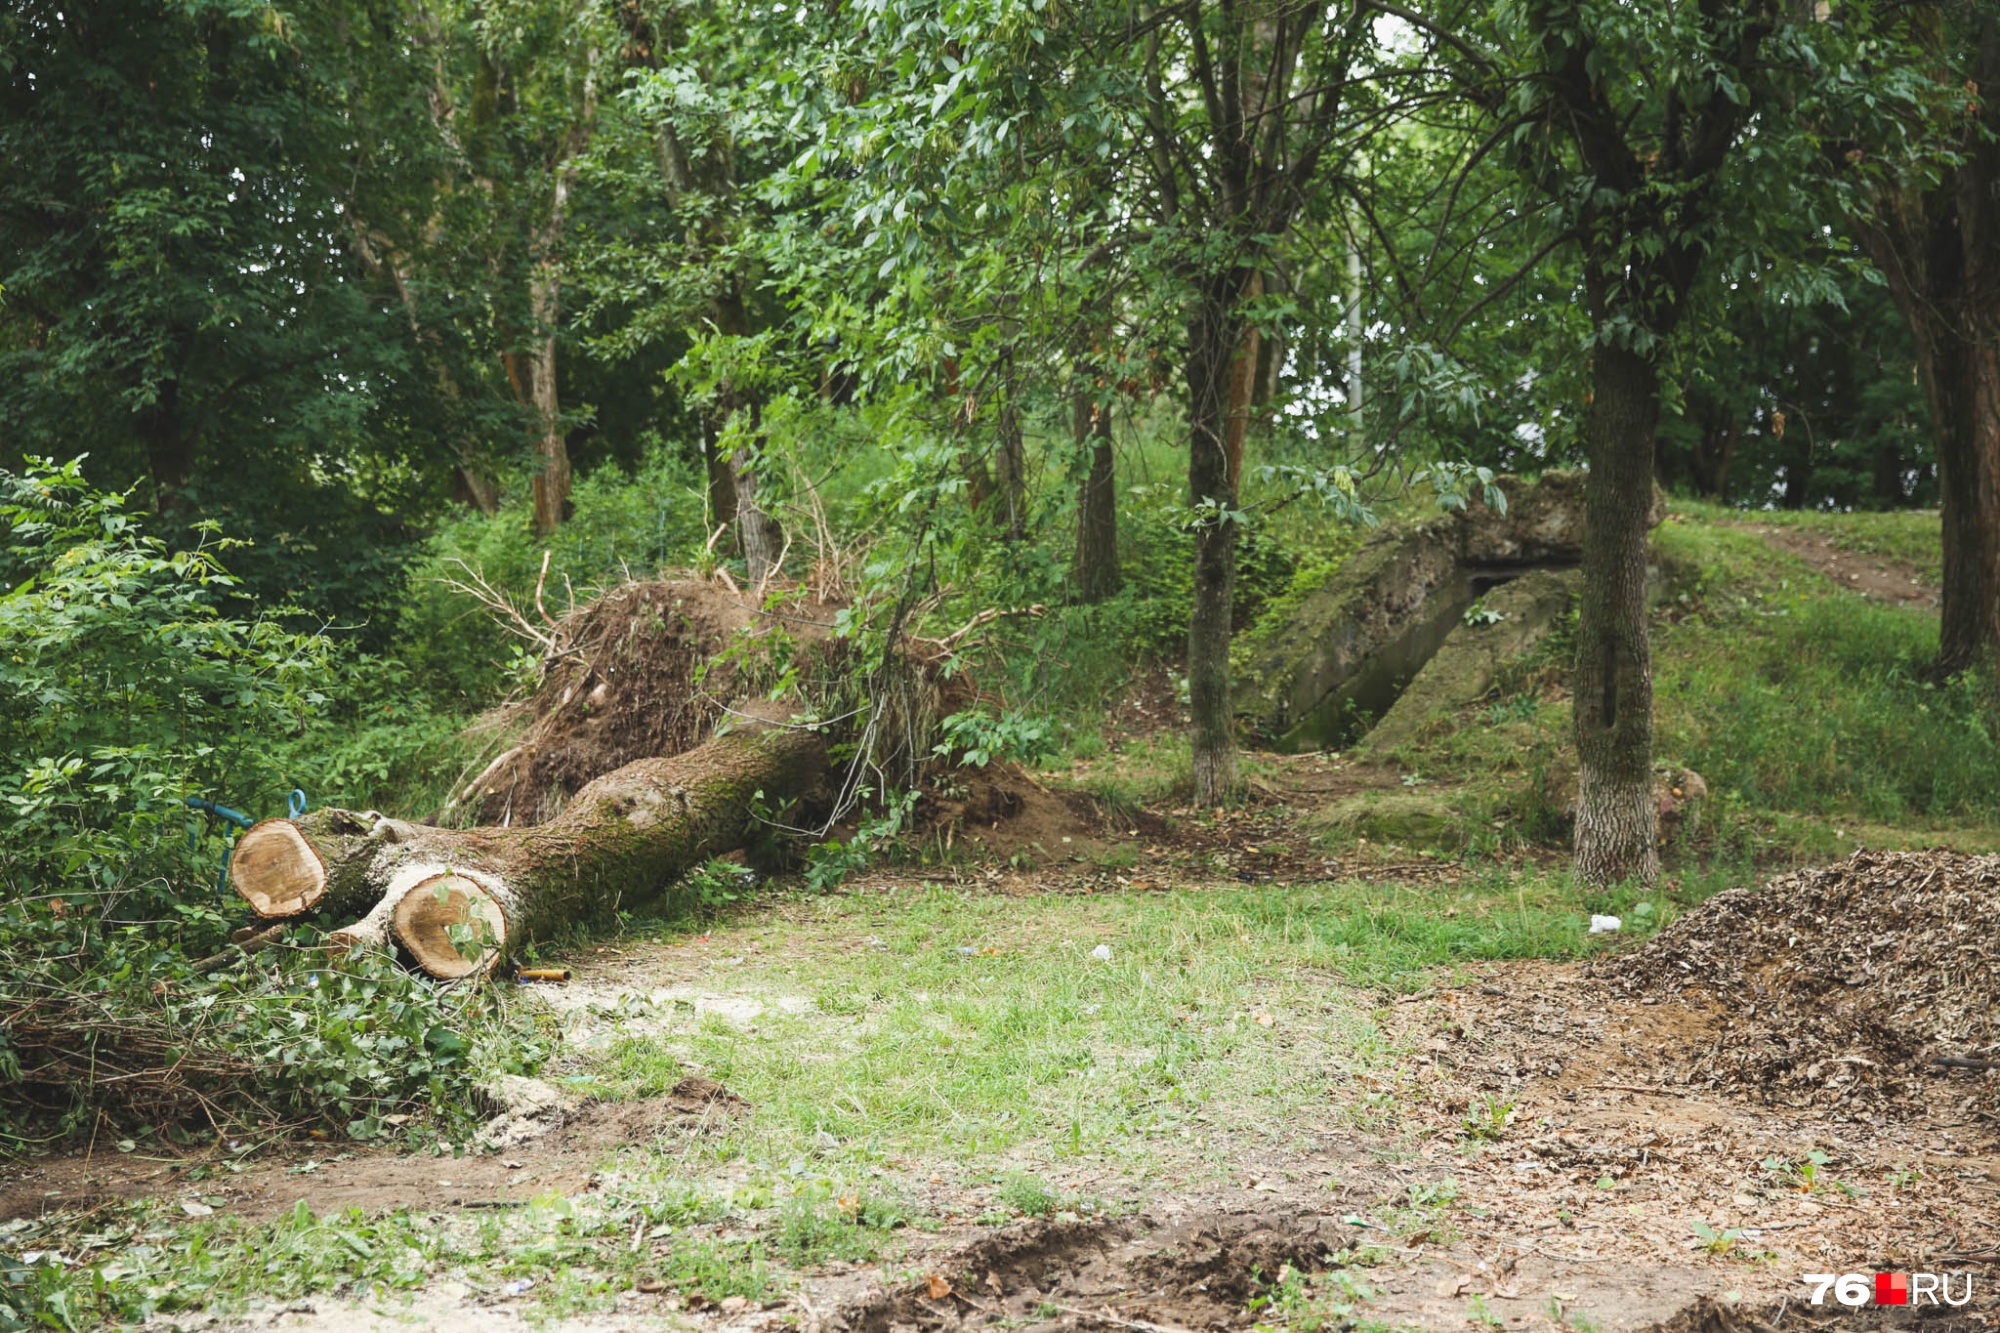 За поваленными деревьями, как говорят местные жители, вход в заброшенный бункер